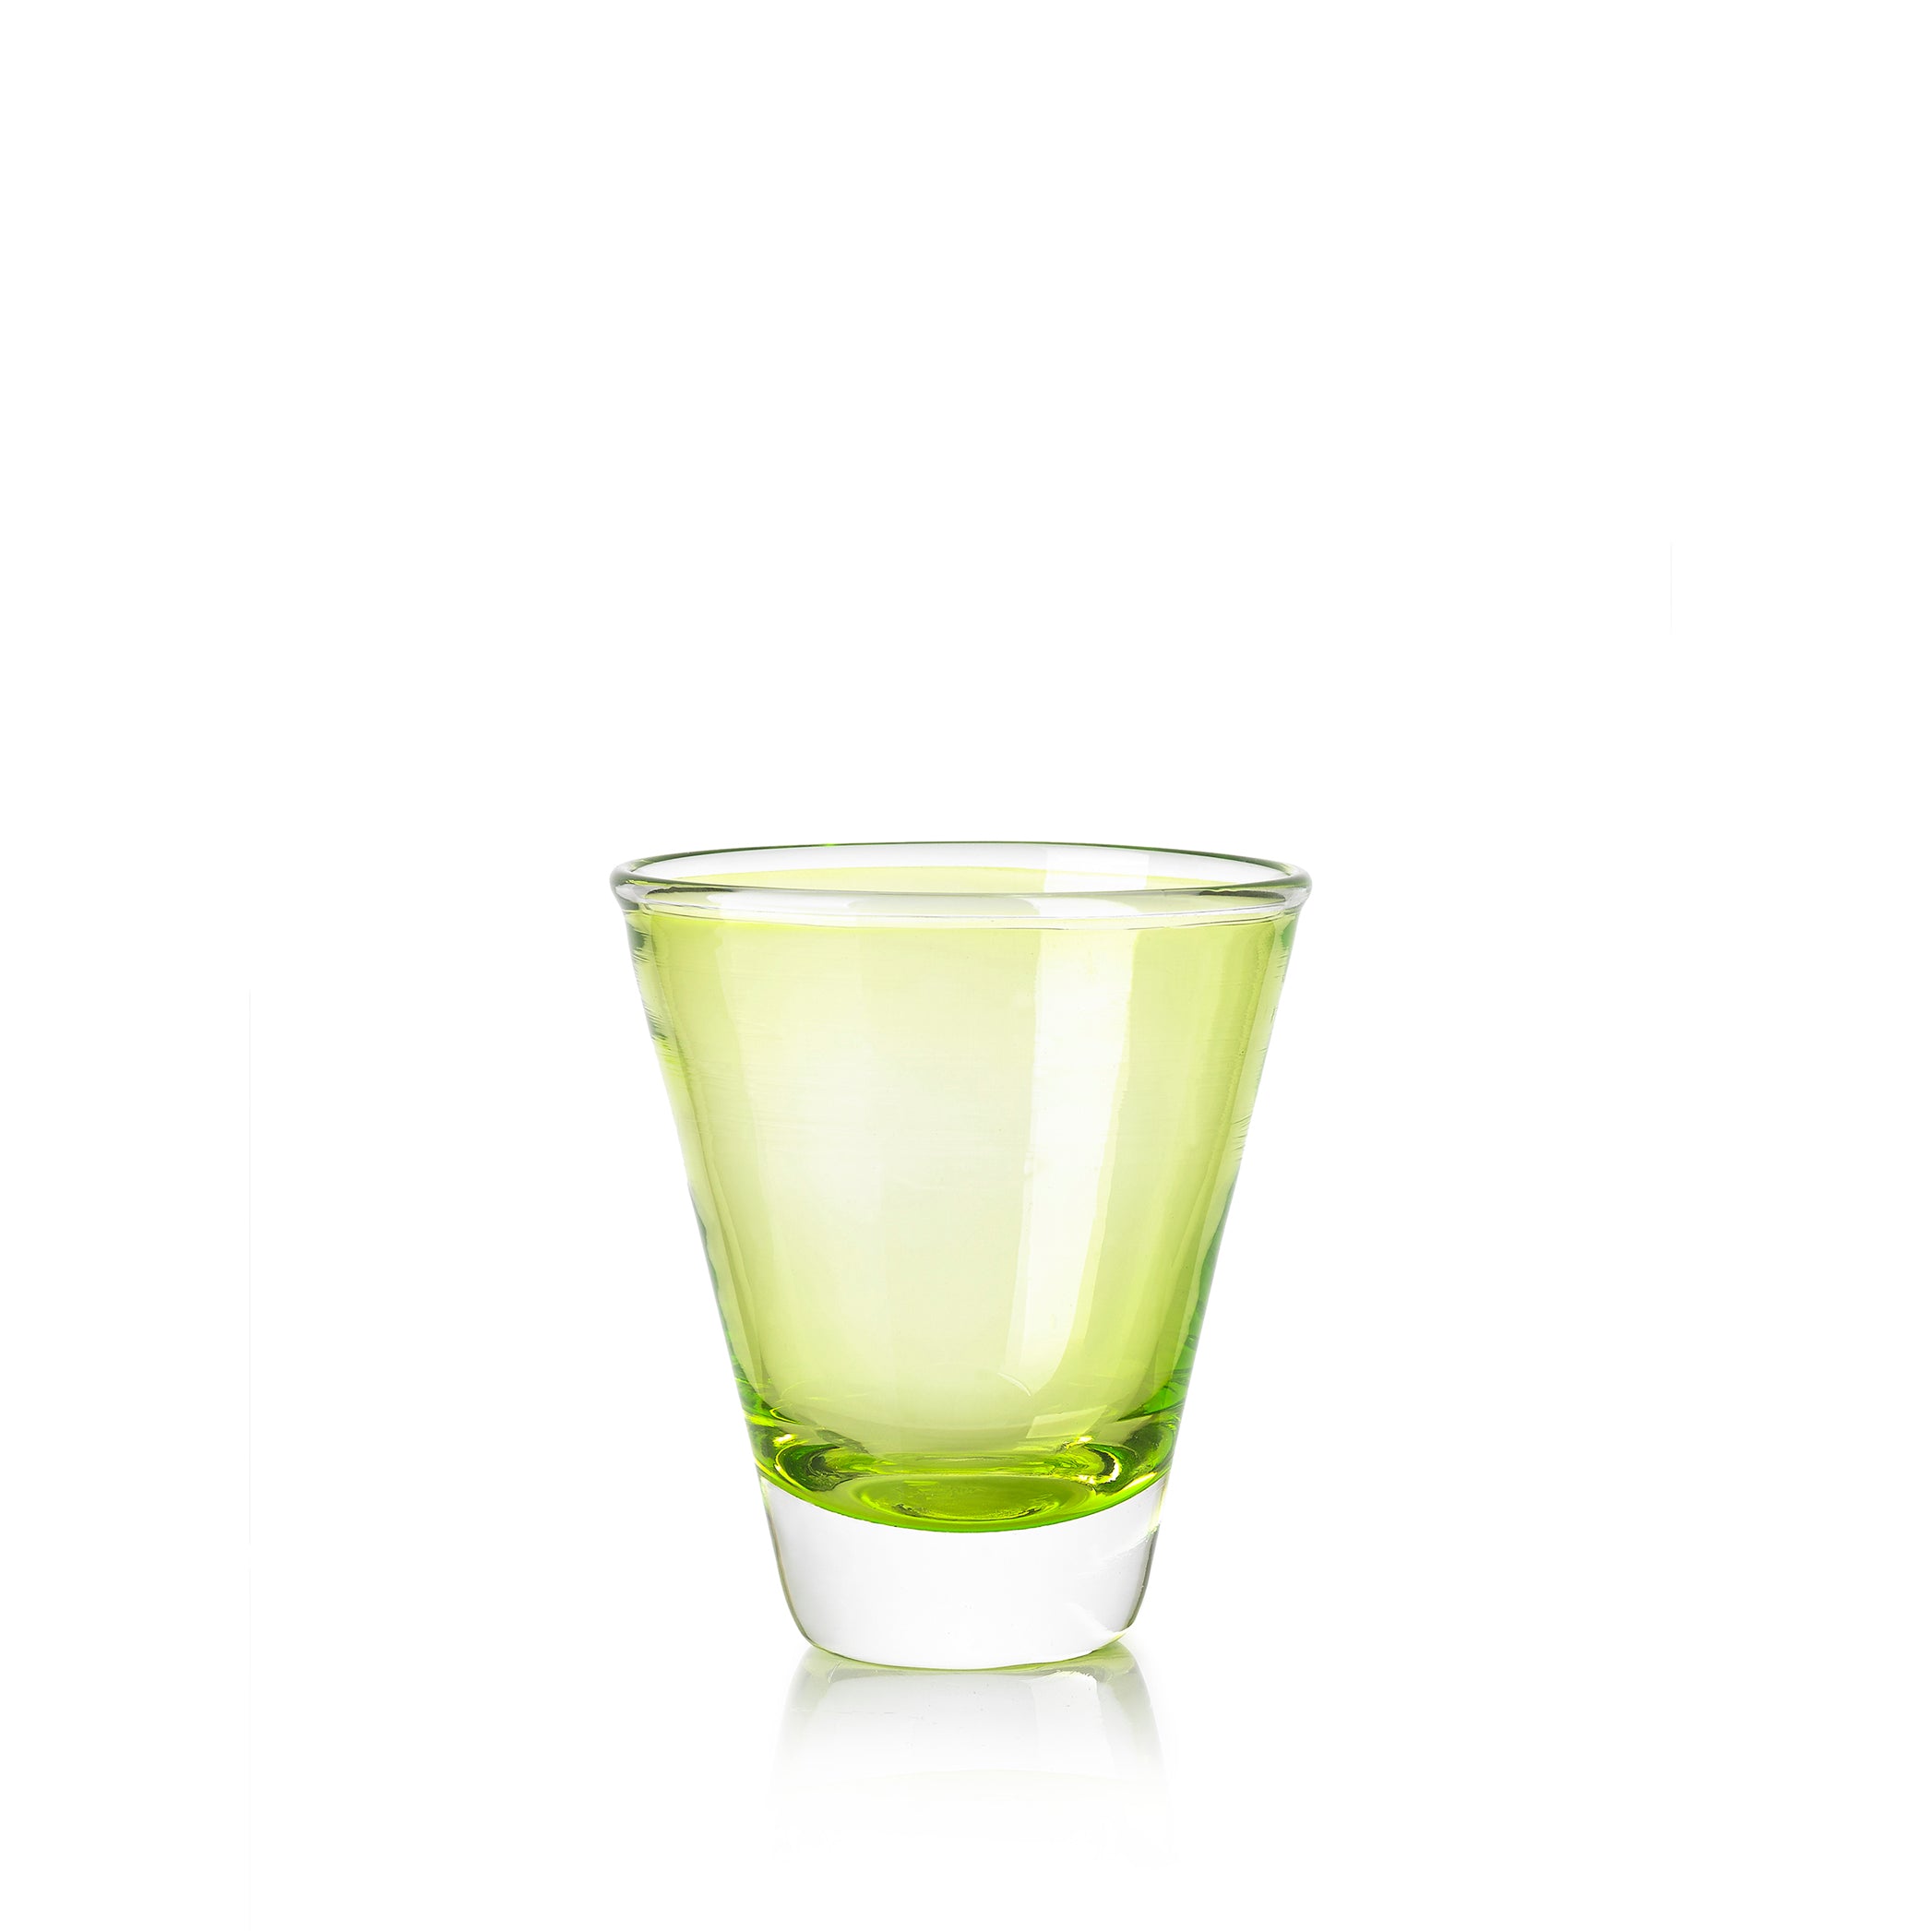 Handblown Clair Glass in Lime Green, 20cl